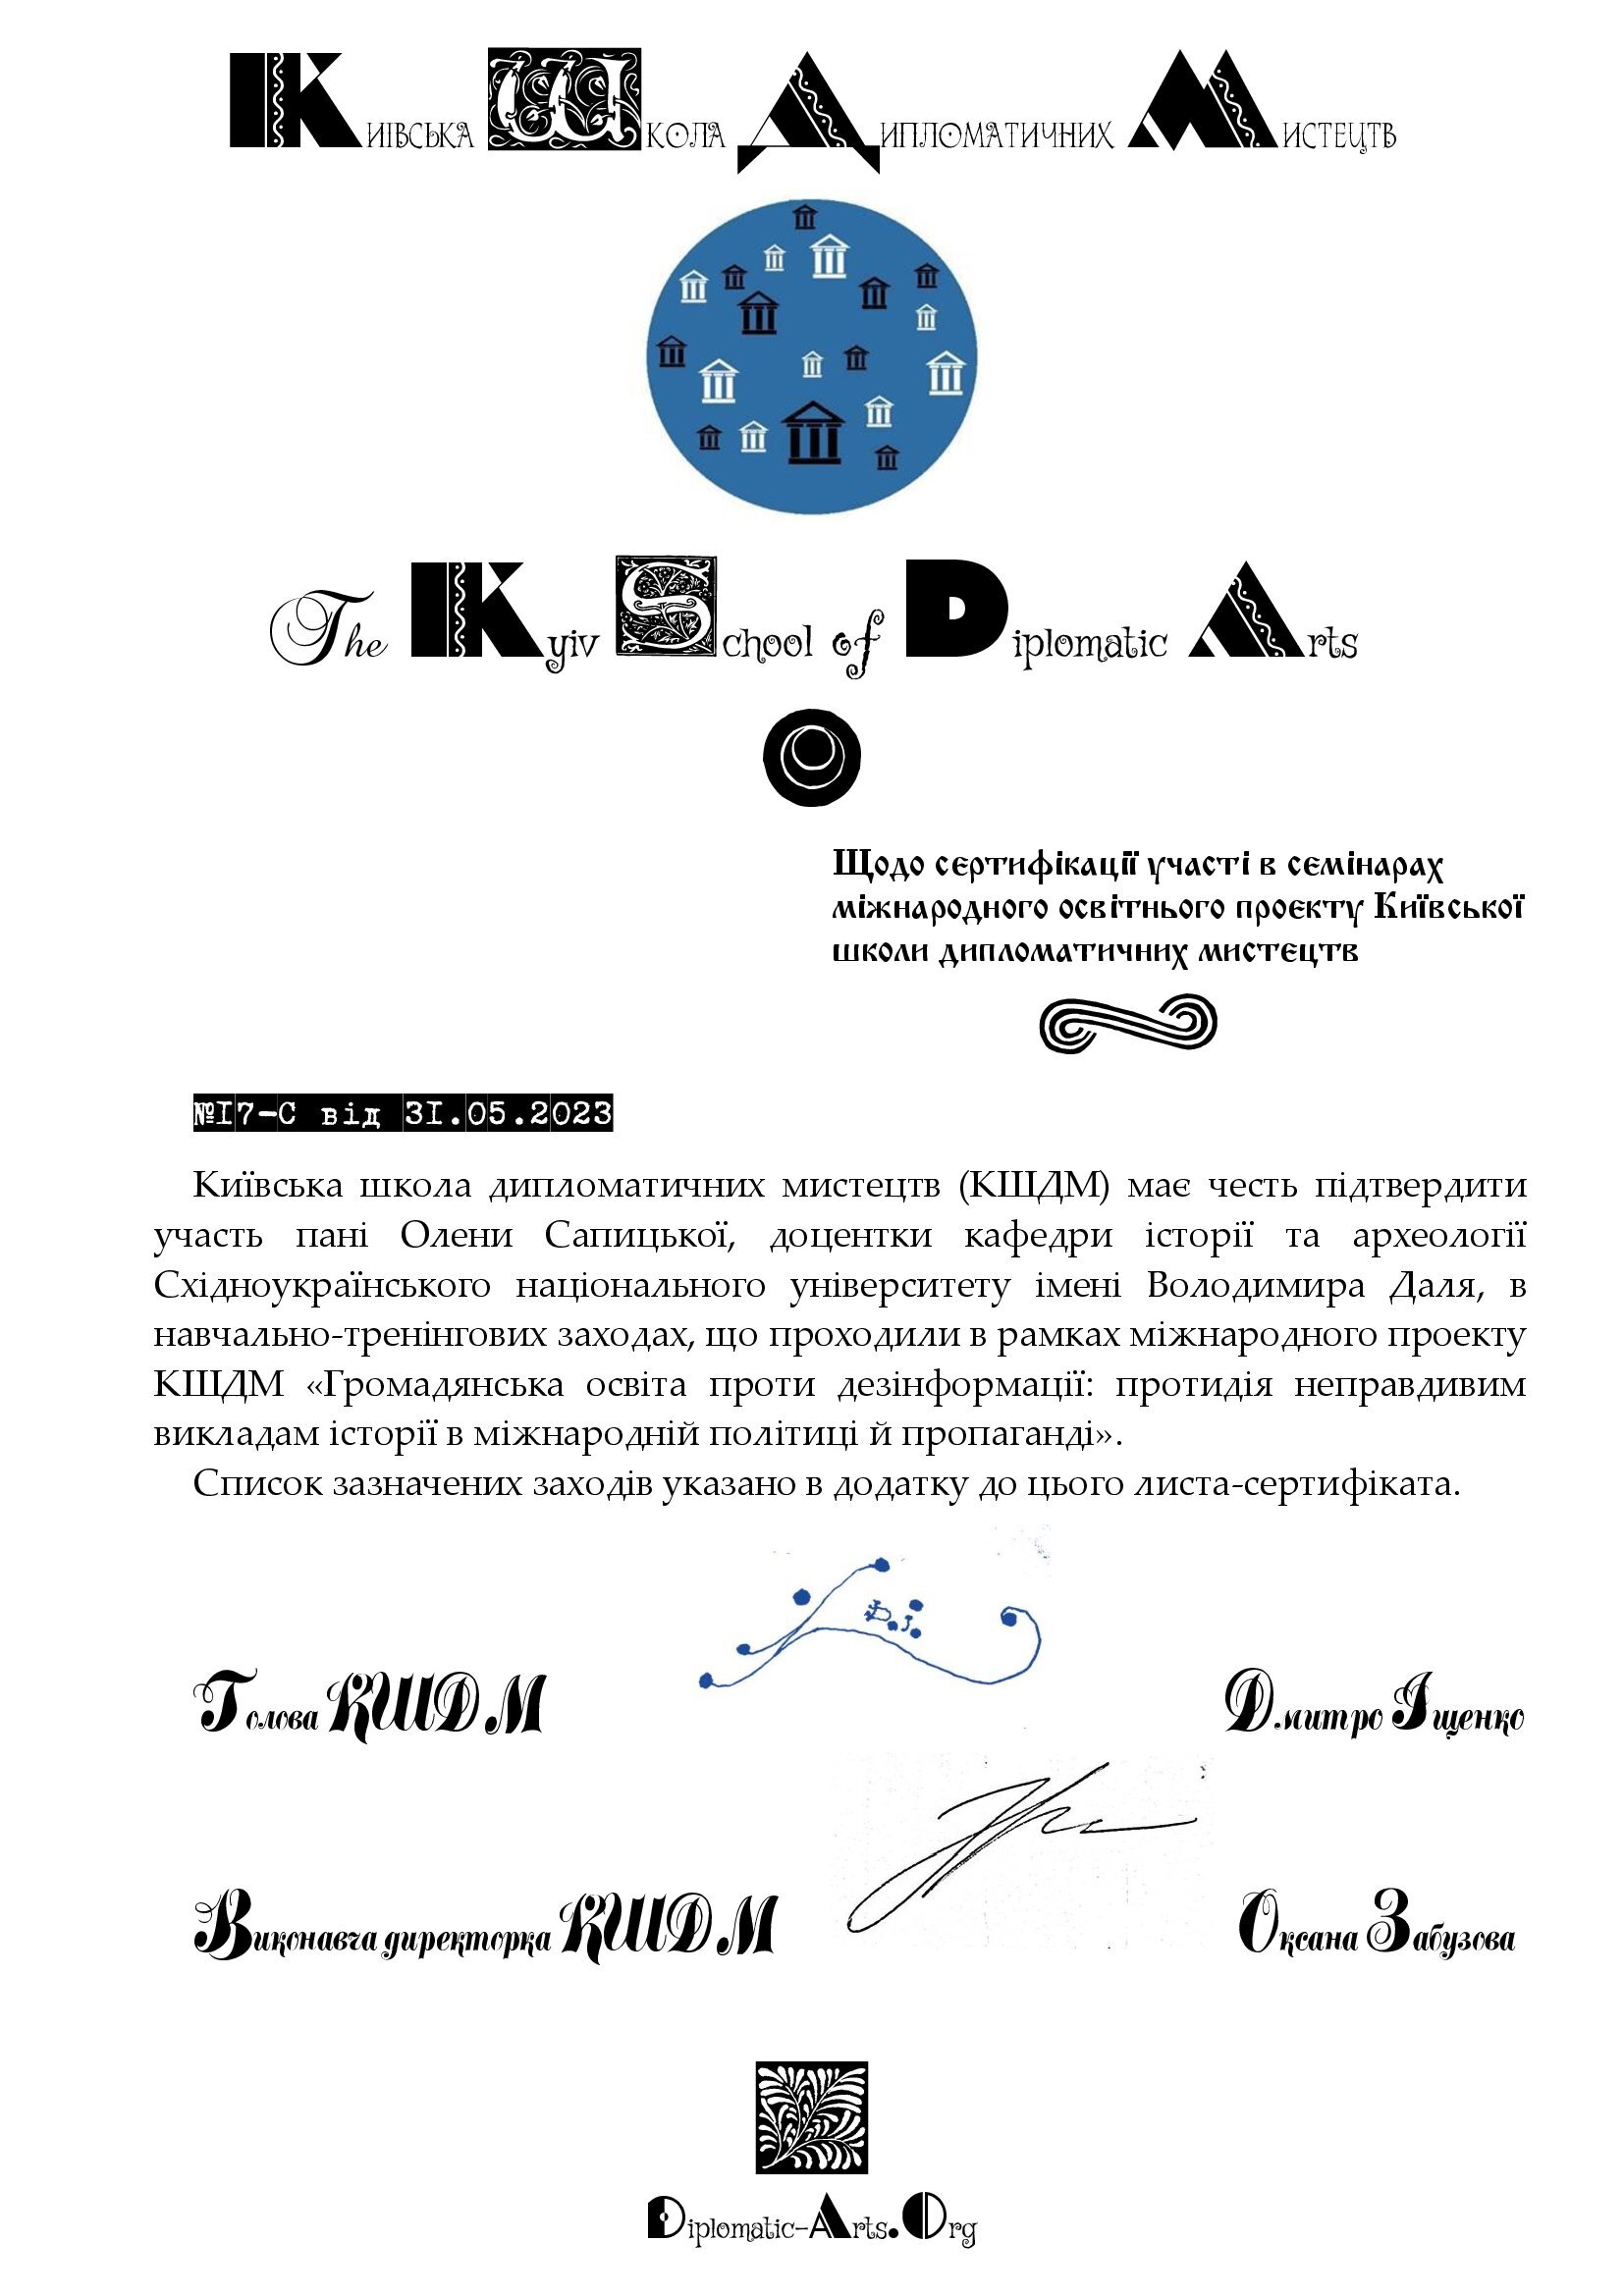 Лист-сертифікат щодо участі в міжнародному проекті КШДМ (п. О.Сапицька).jpg